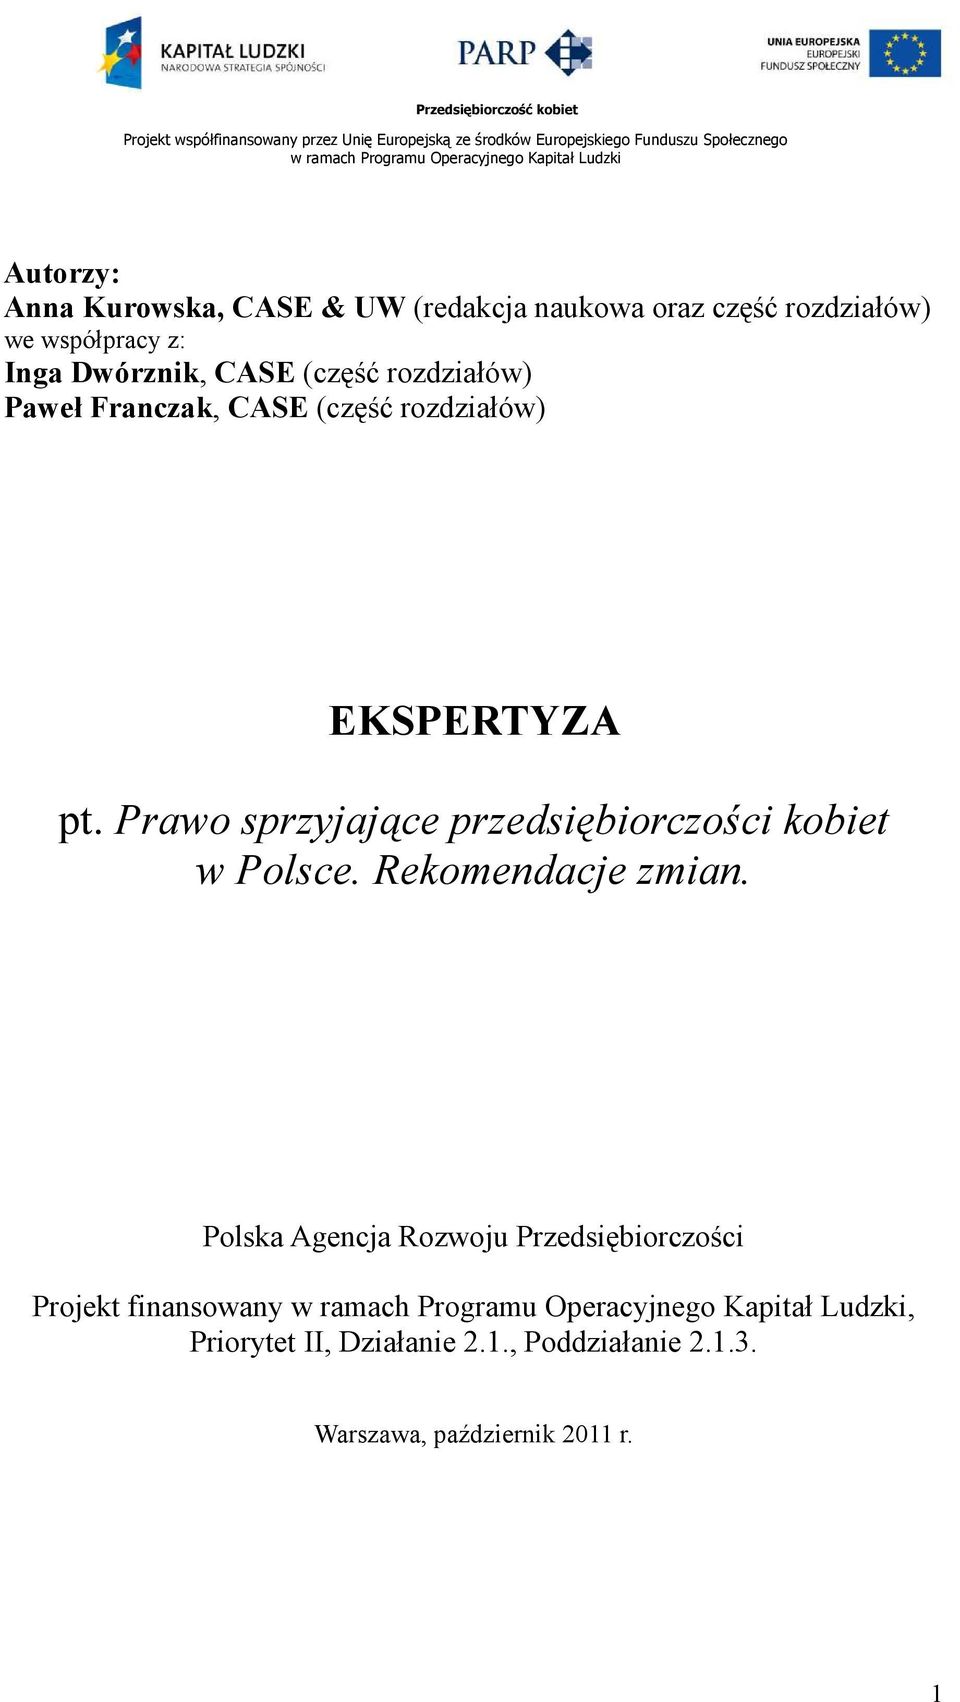 Prawo sprzyjające przedsiębiorczości kobiet w Polsce. Rekomendacje zmian.